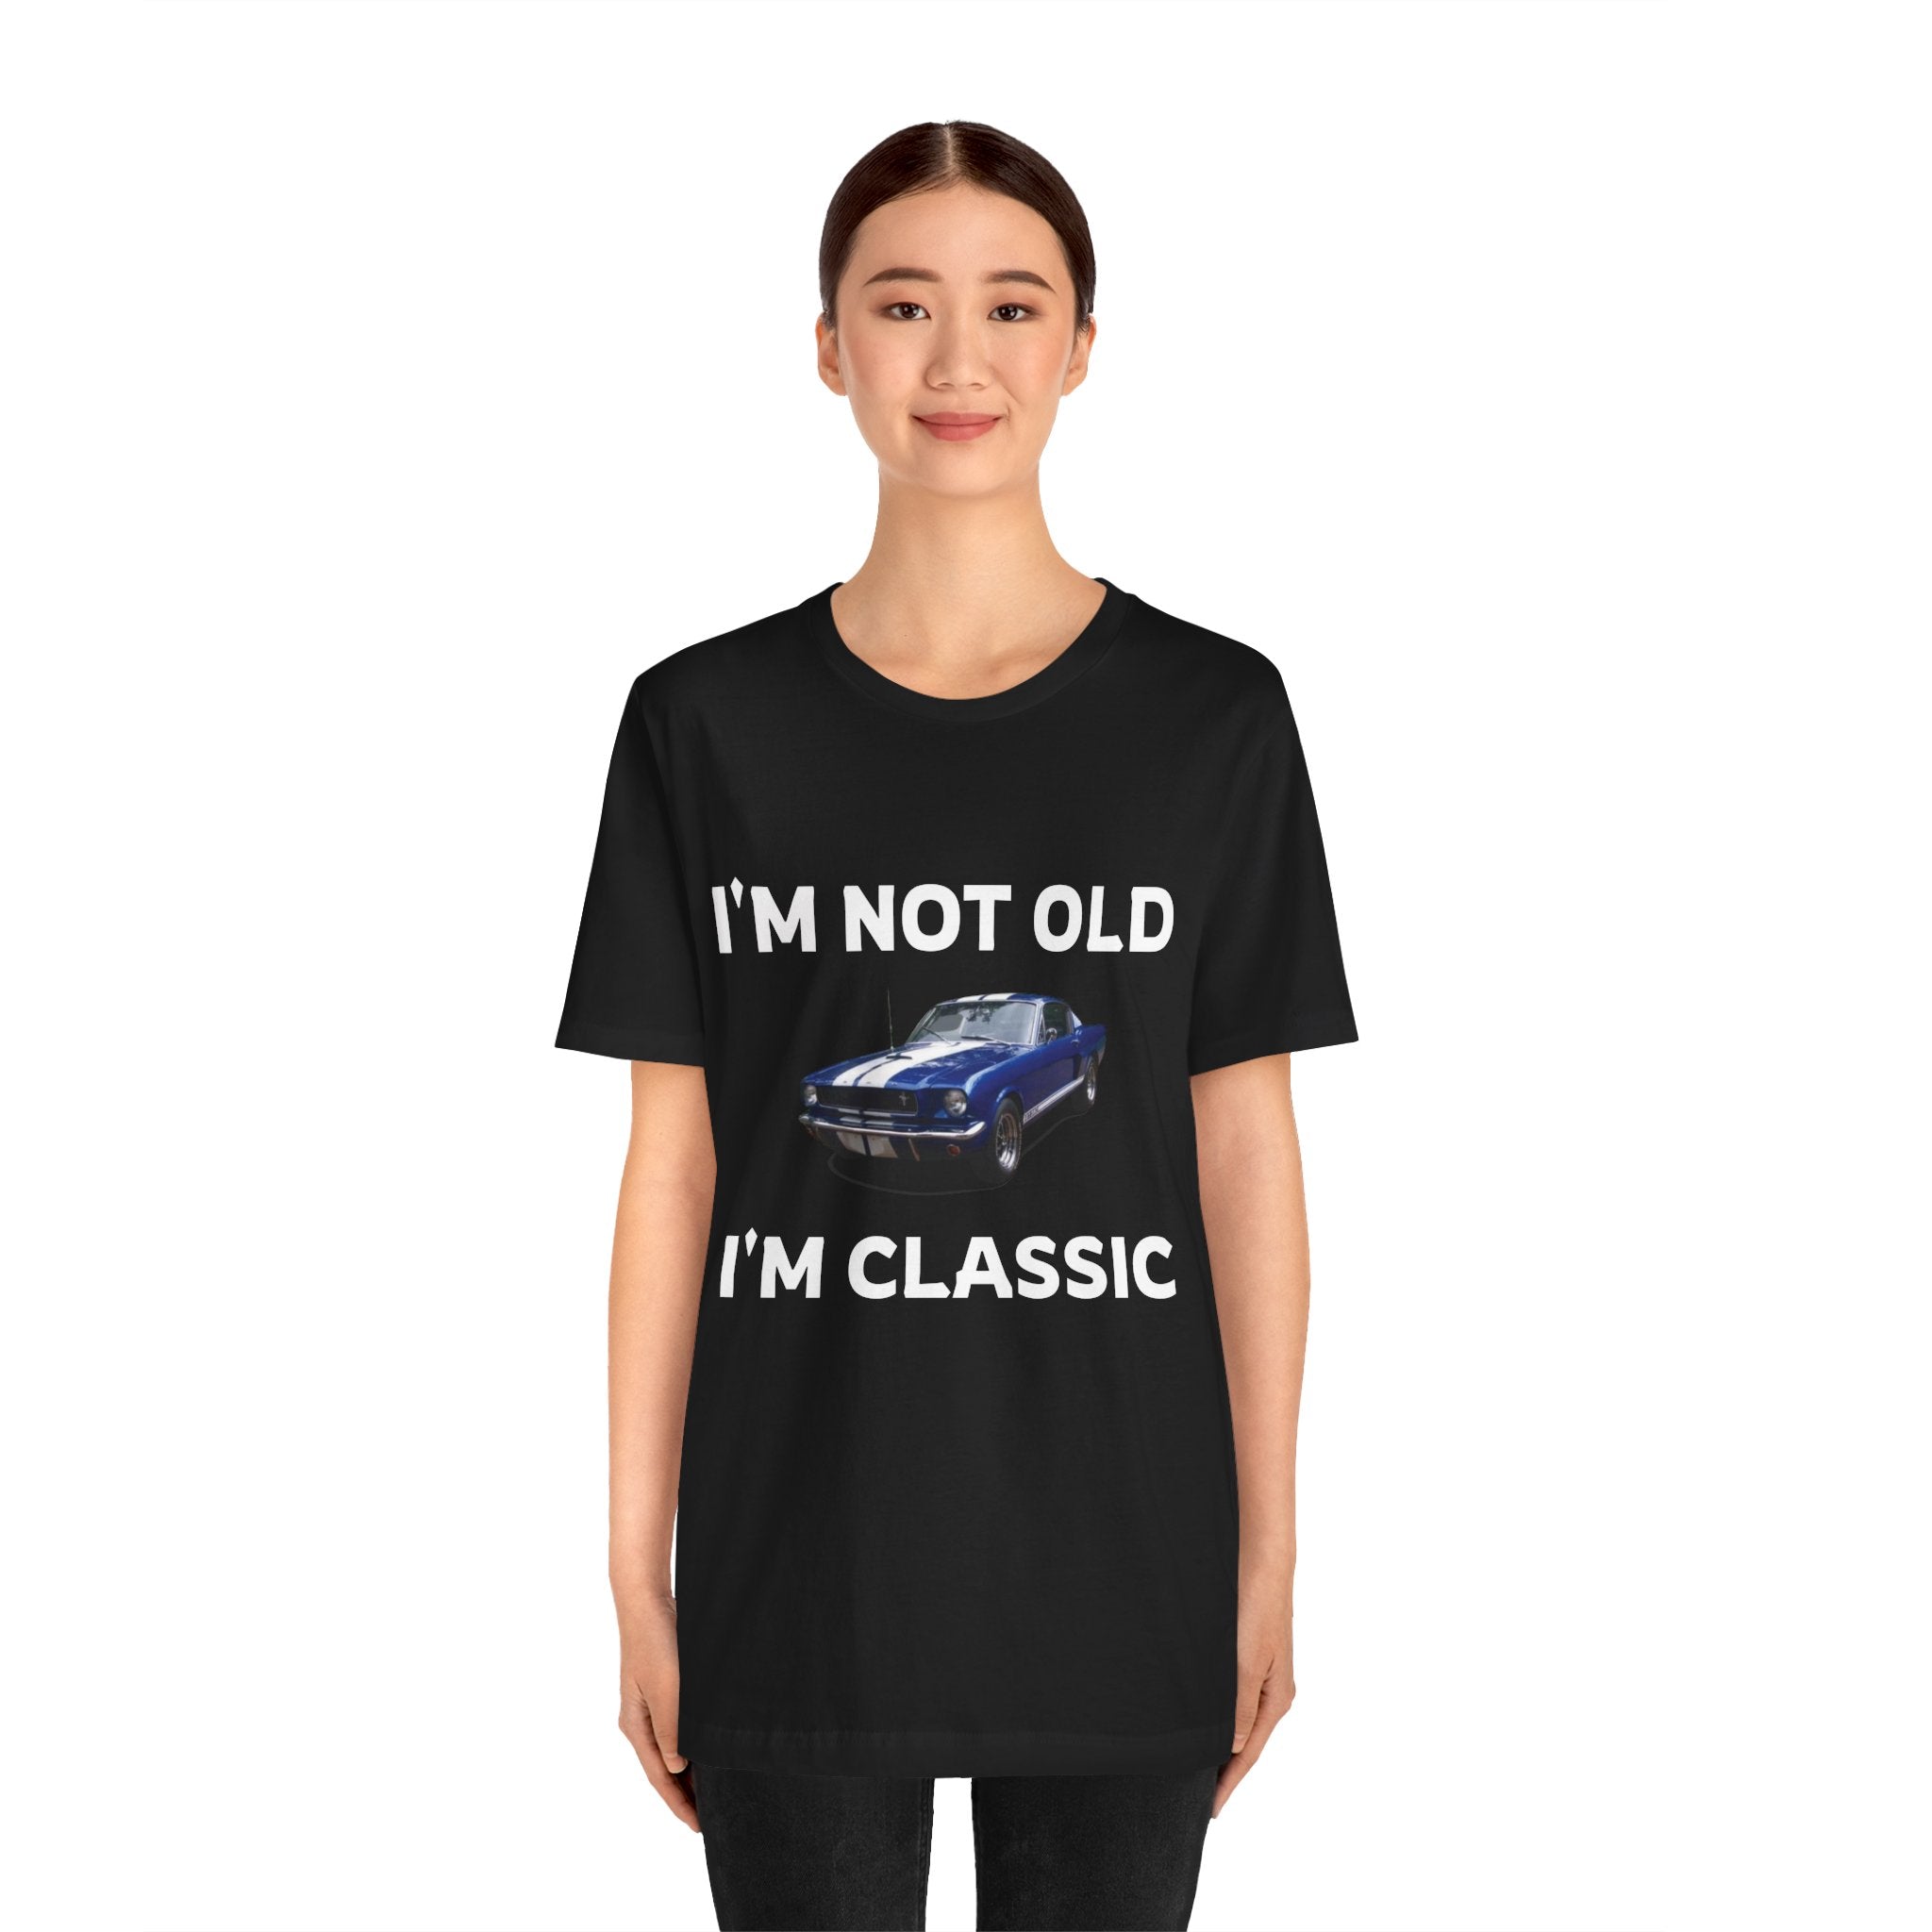 I'M NOT OLD, I'M CLASSIC